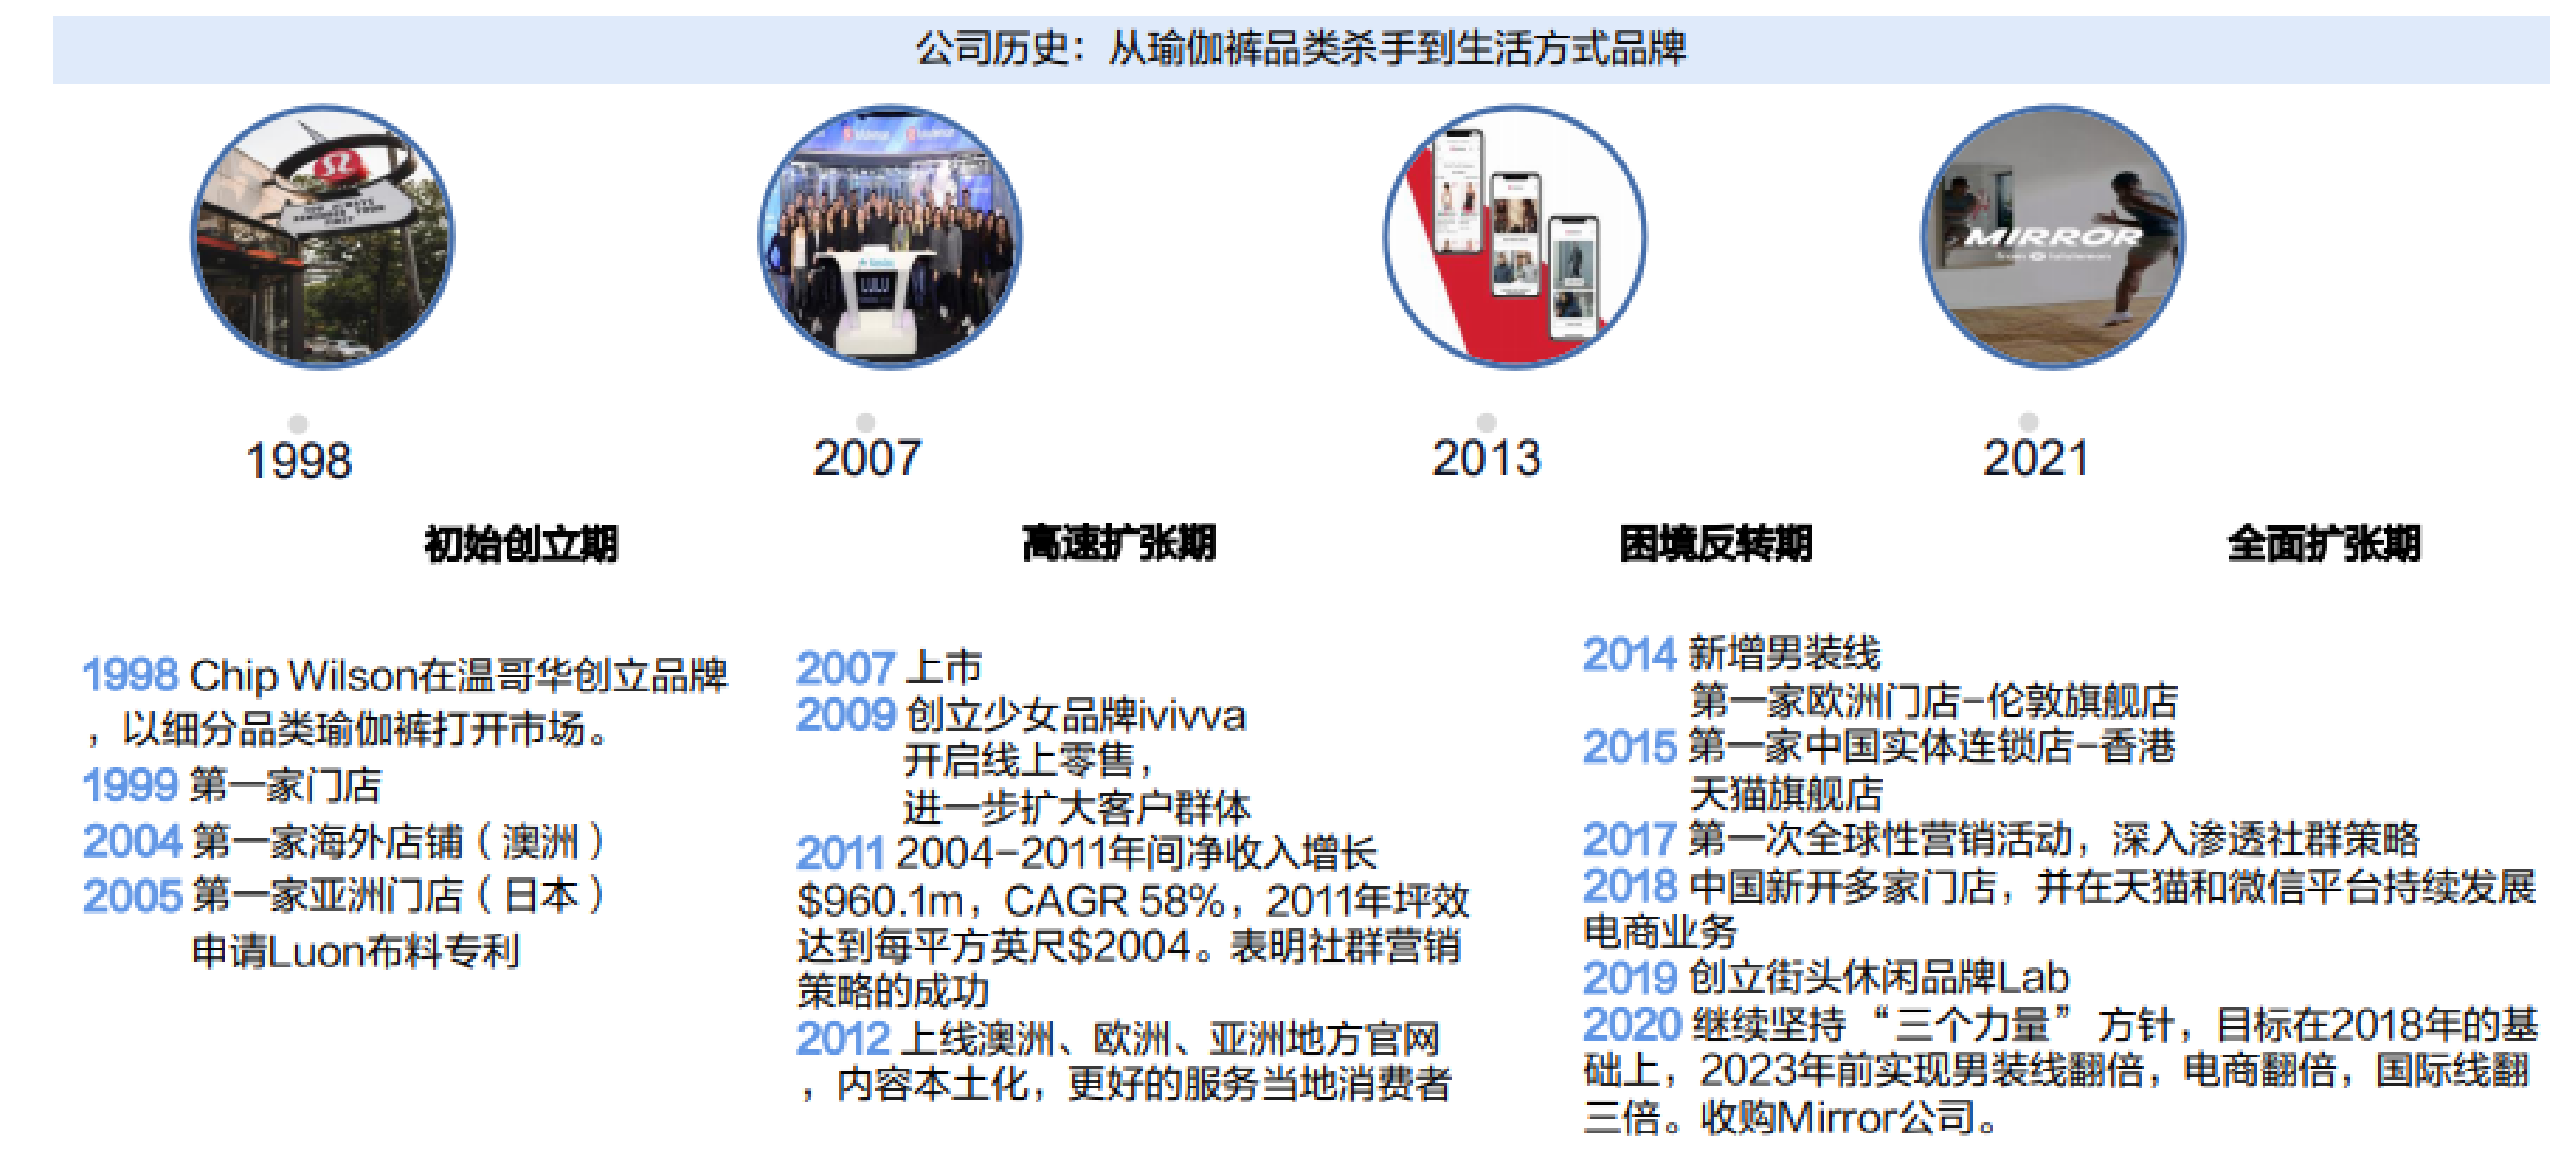 从lululemon的发展历程来看,公司主要了几个大的阶段,1998年成立以后